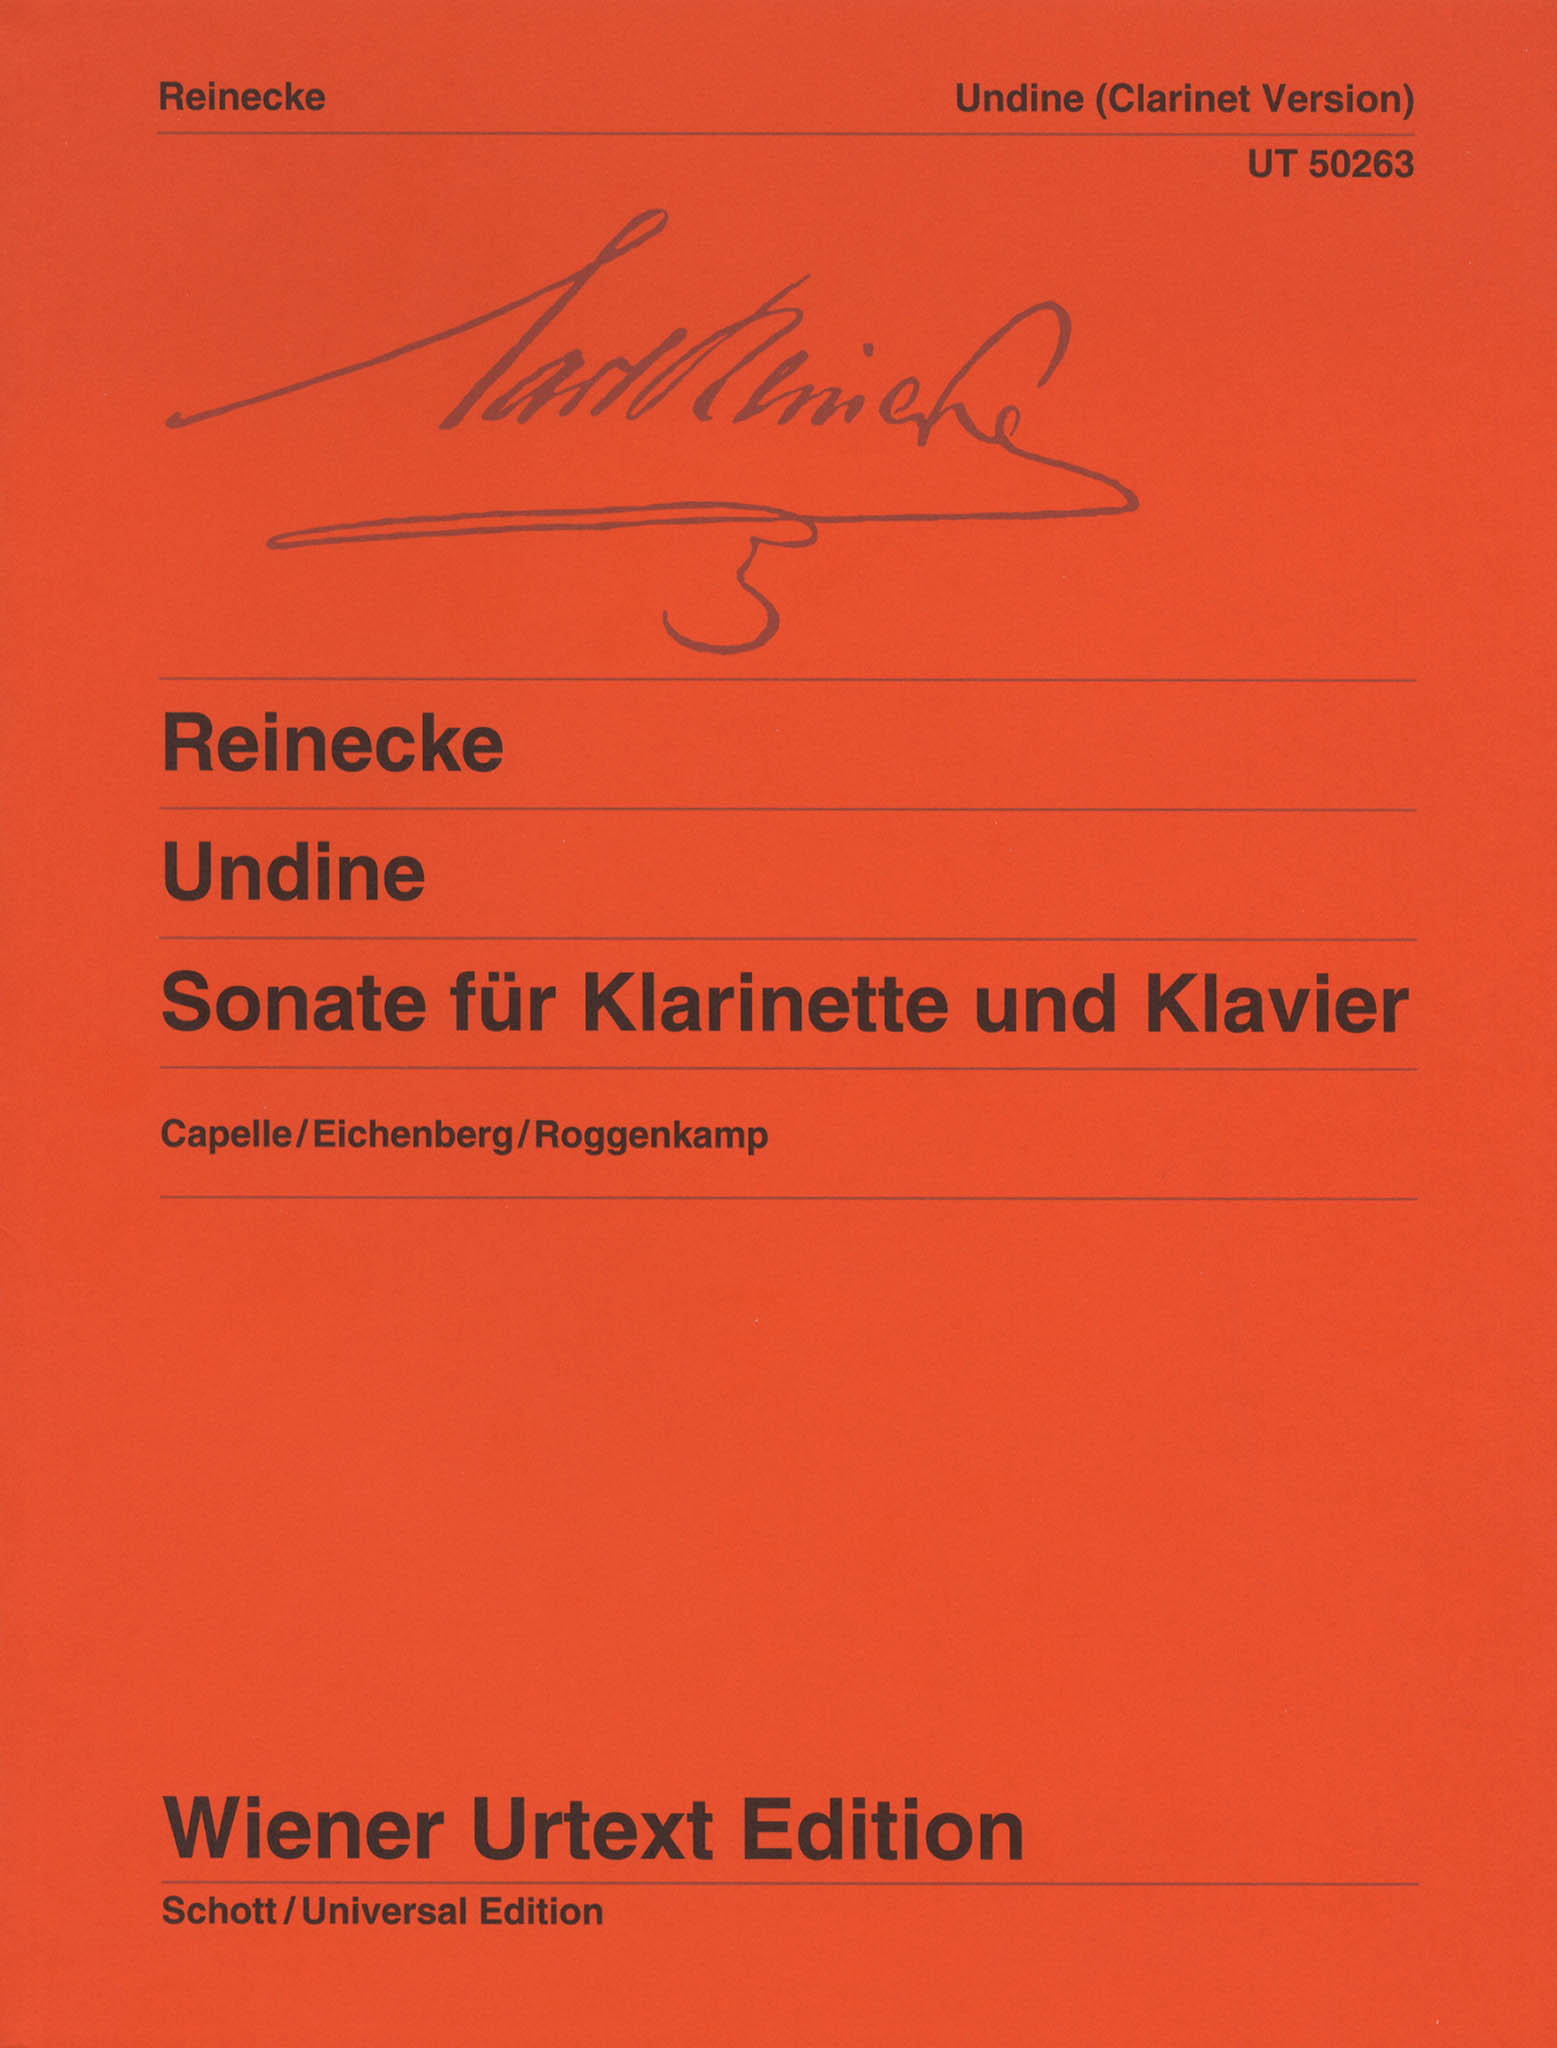 Sonata for Clarinet & Piano, Op. 167 ‘Undine’ Cover